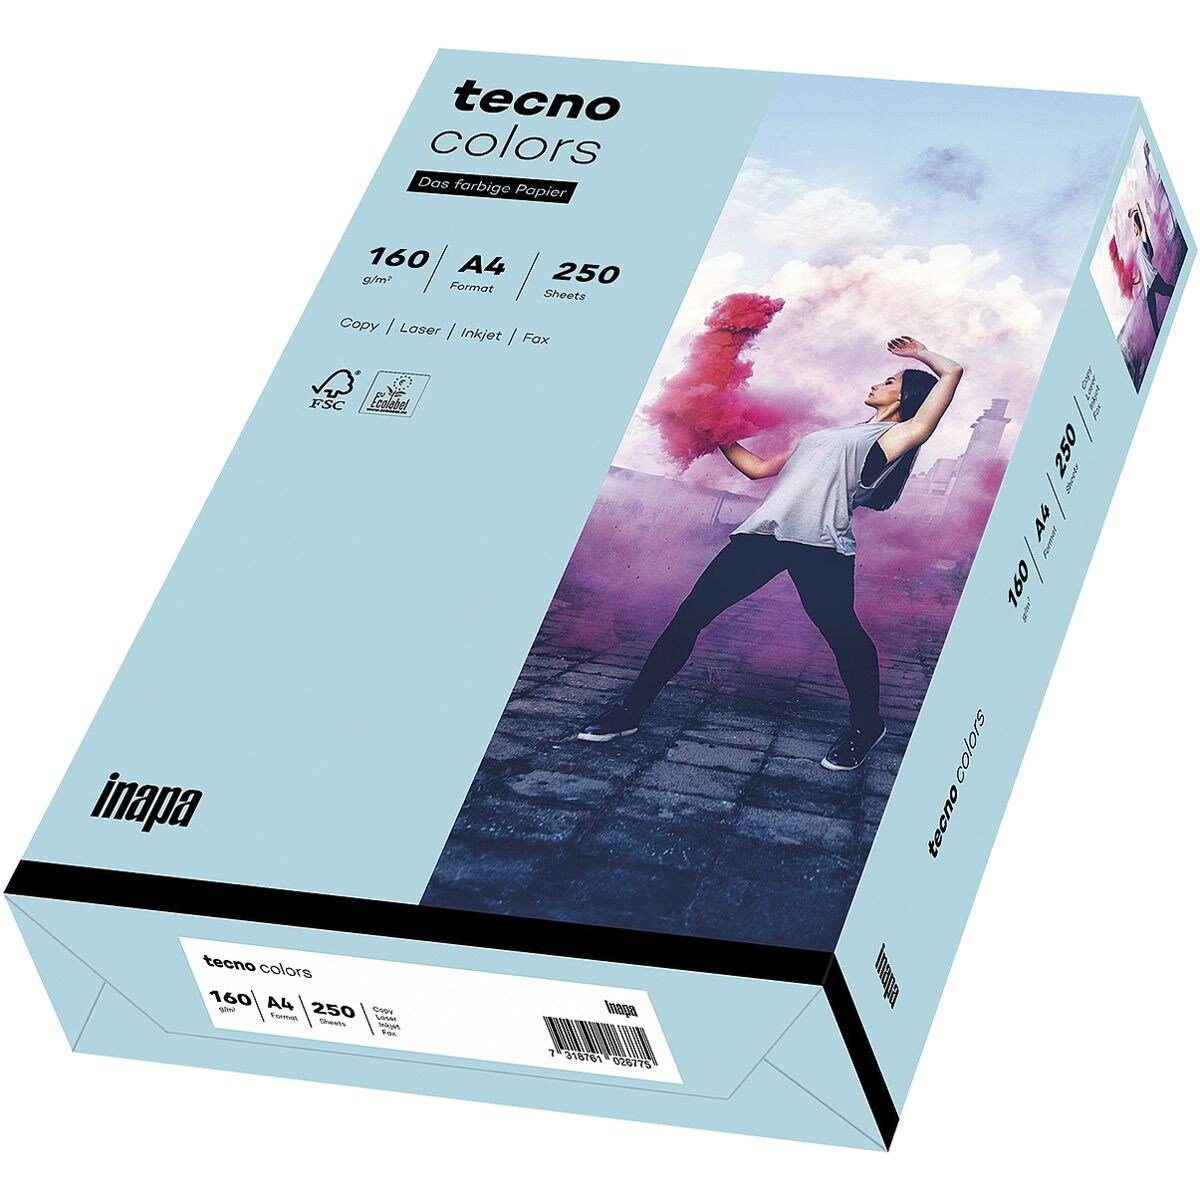 Format tecno Kopierpapier DIN tecno und / Drucker- Blatt g/m², Rainbow A4, 160 mittelblau Colors, Pastellfarben, Inapa 250